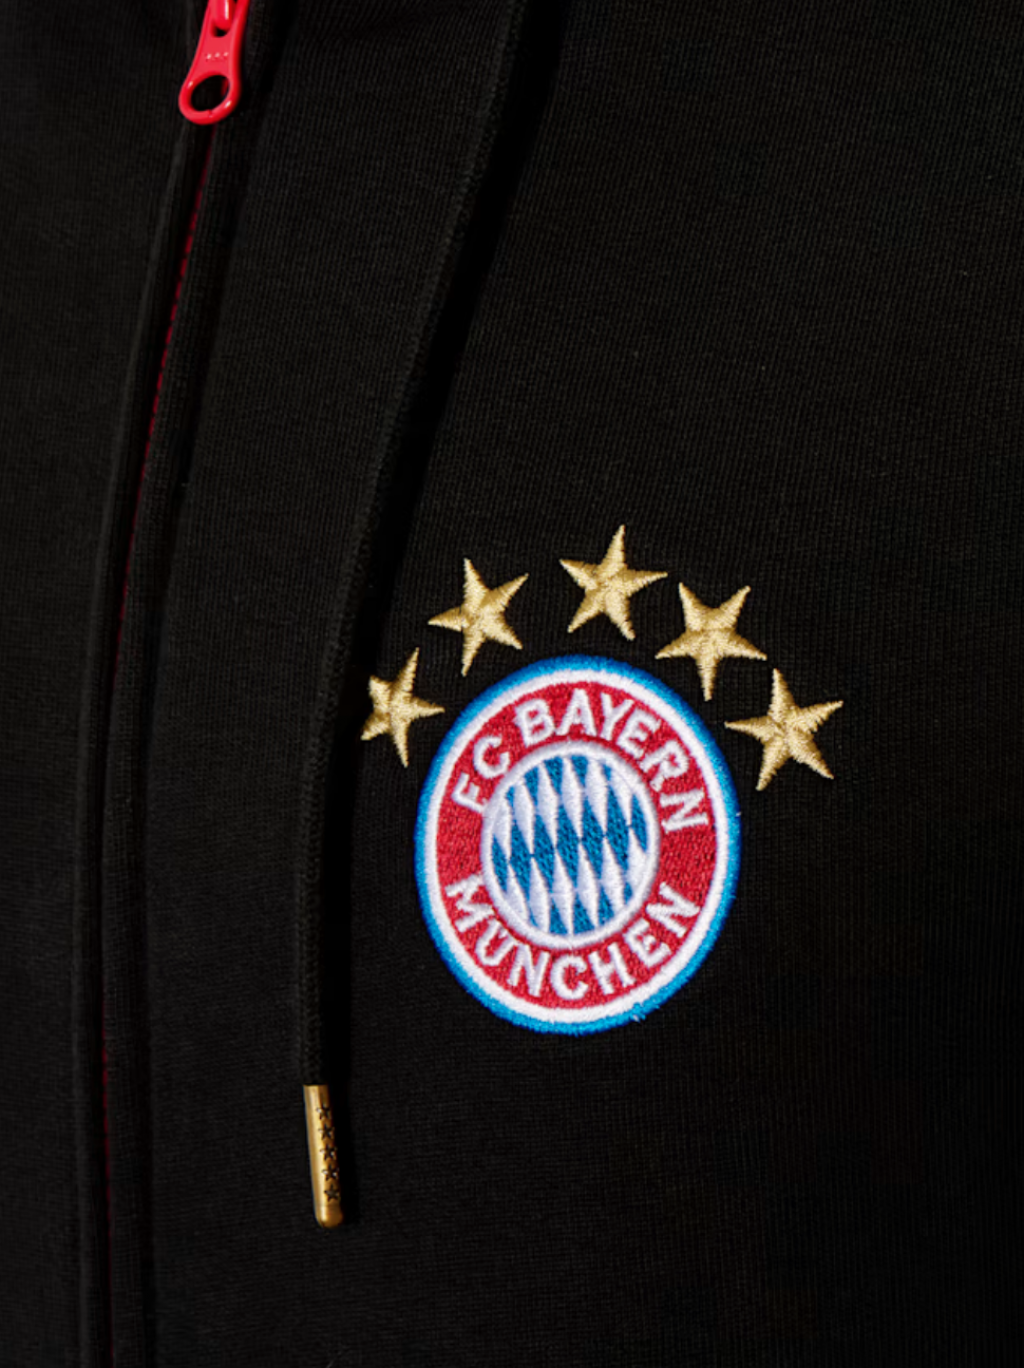 Férfi kapucnis melegítő felső FC Bayern München Logo, fekete